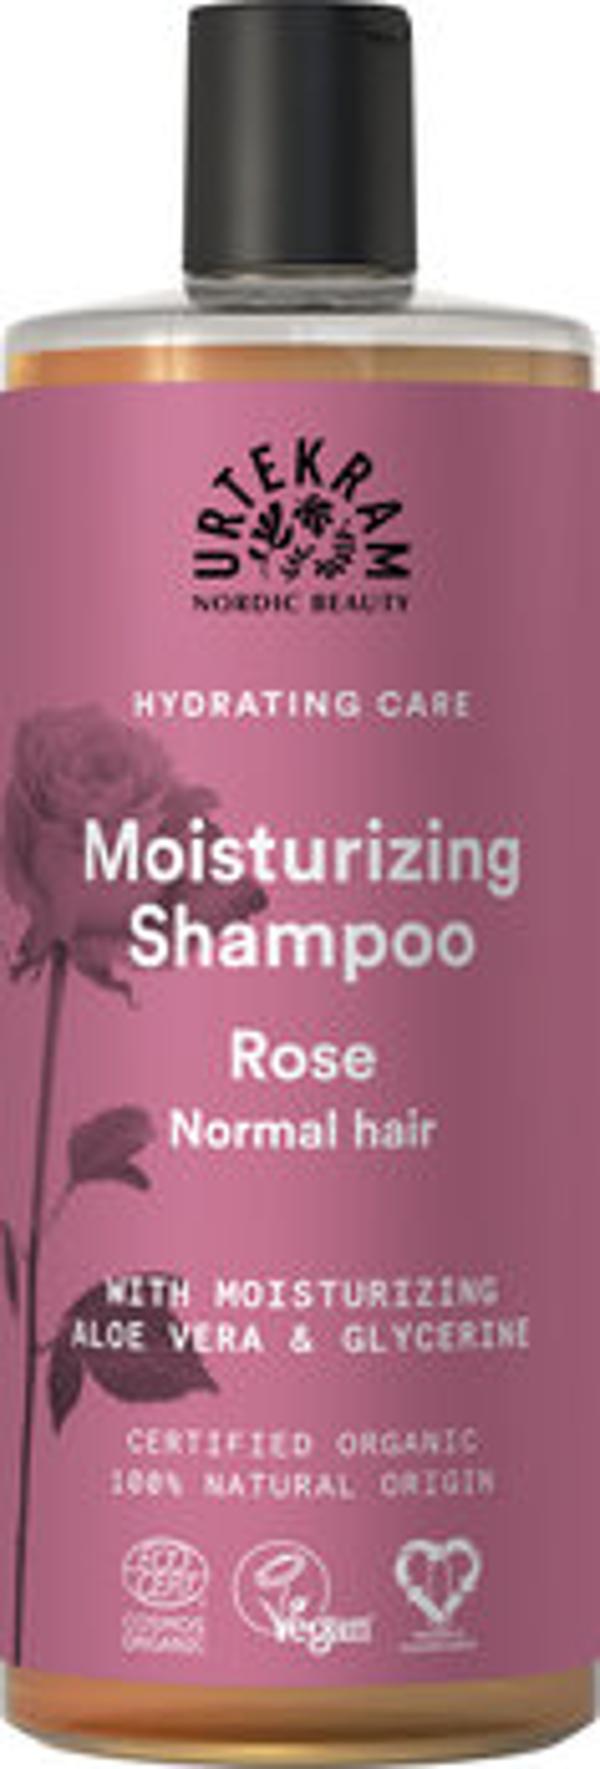 Produktfoto zu Rosen Shampoo